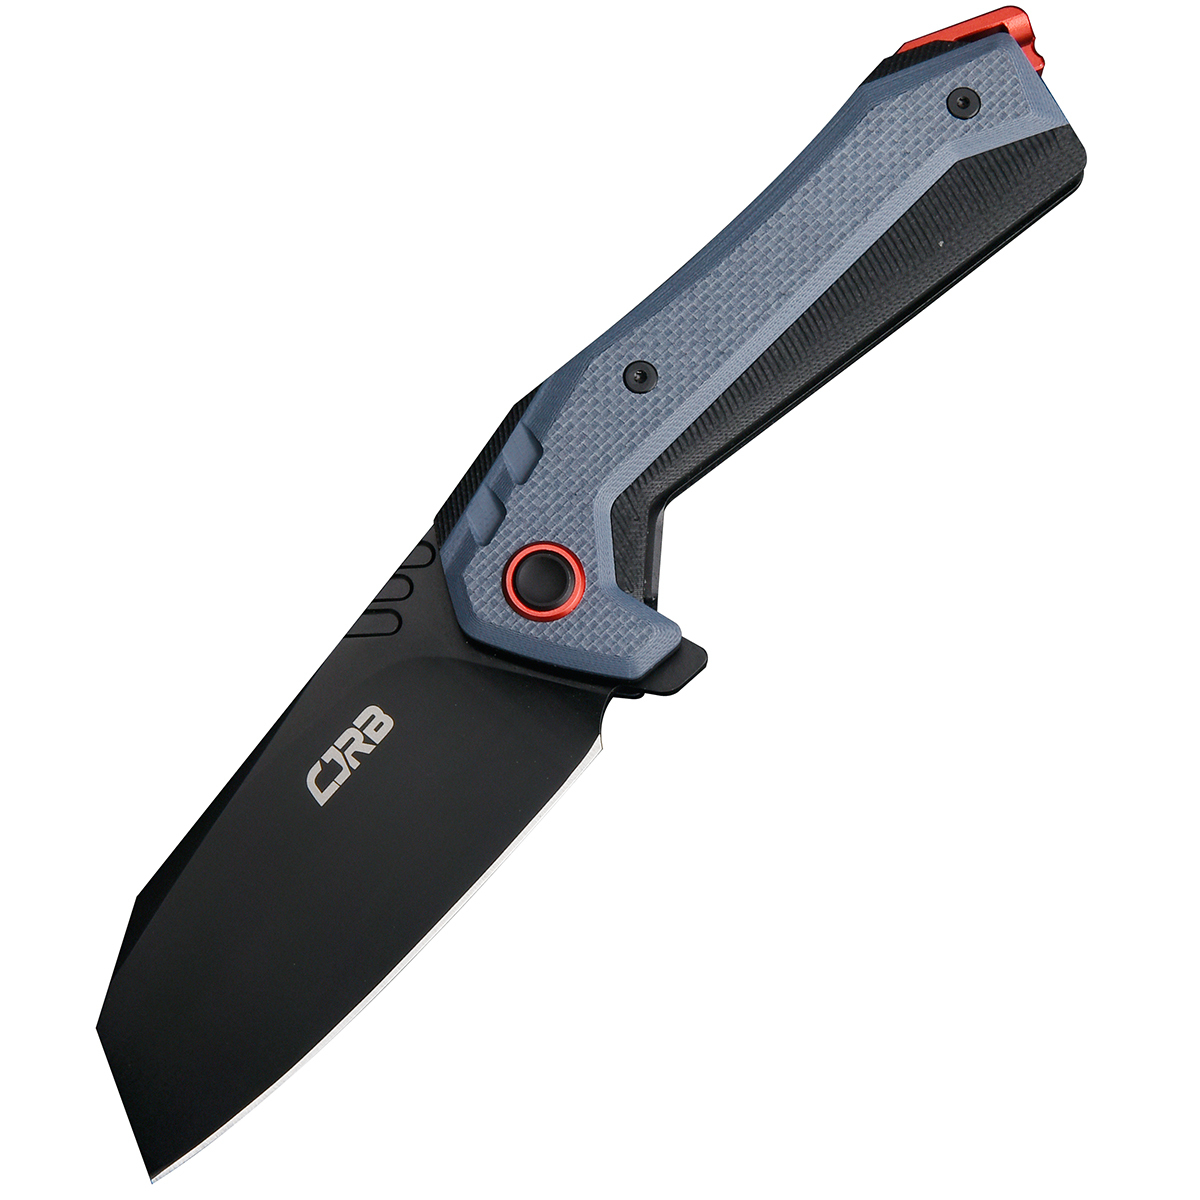 Складной нож CJRB Tigris, сталь AR-RPM9, рукоять G10 складной нож cjrb tigris сталь ar rpm9 blue g10